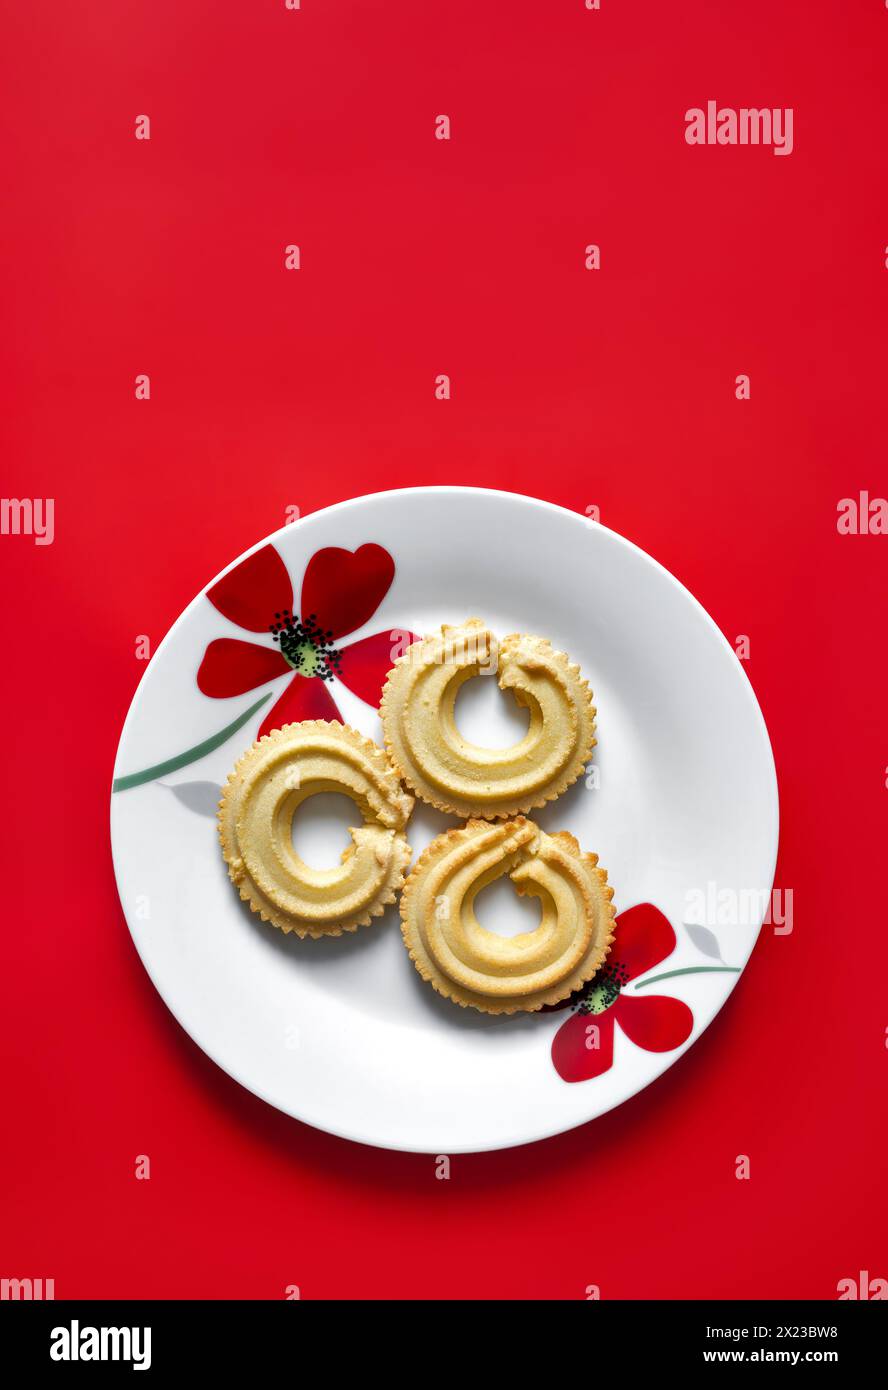 La vaniglia viennese mescola i biscotti su piatto bianco con motivo floreale rosso, presi su sfondo rosso Foto Stock